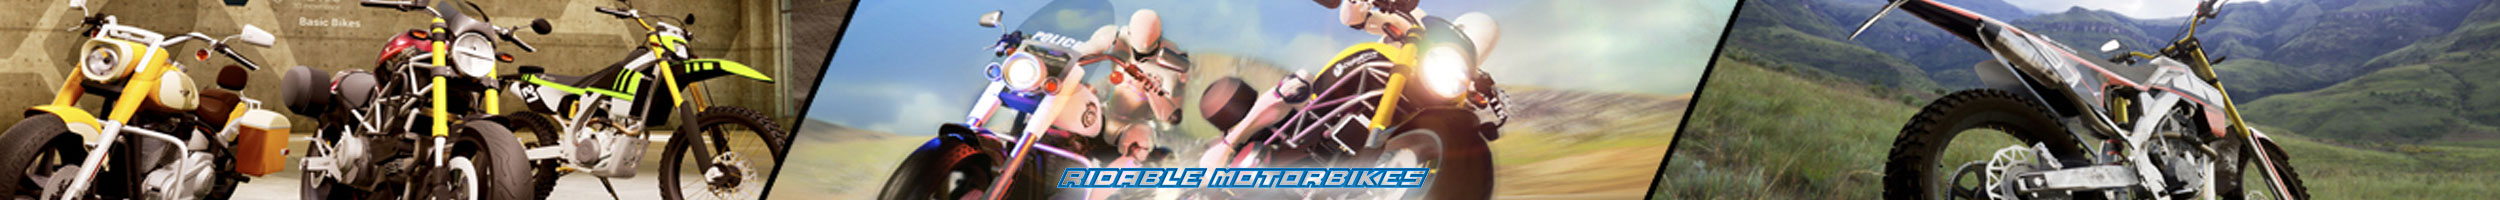 3d model motor bikes race